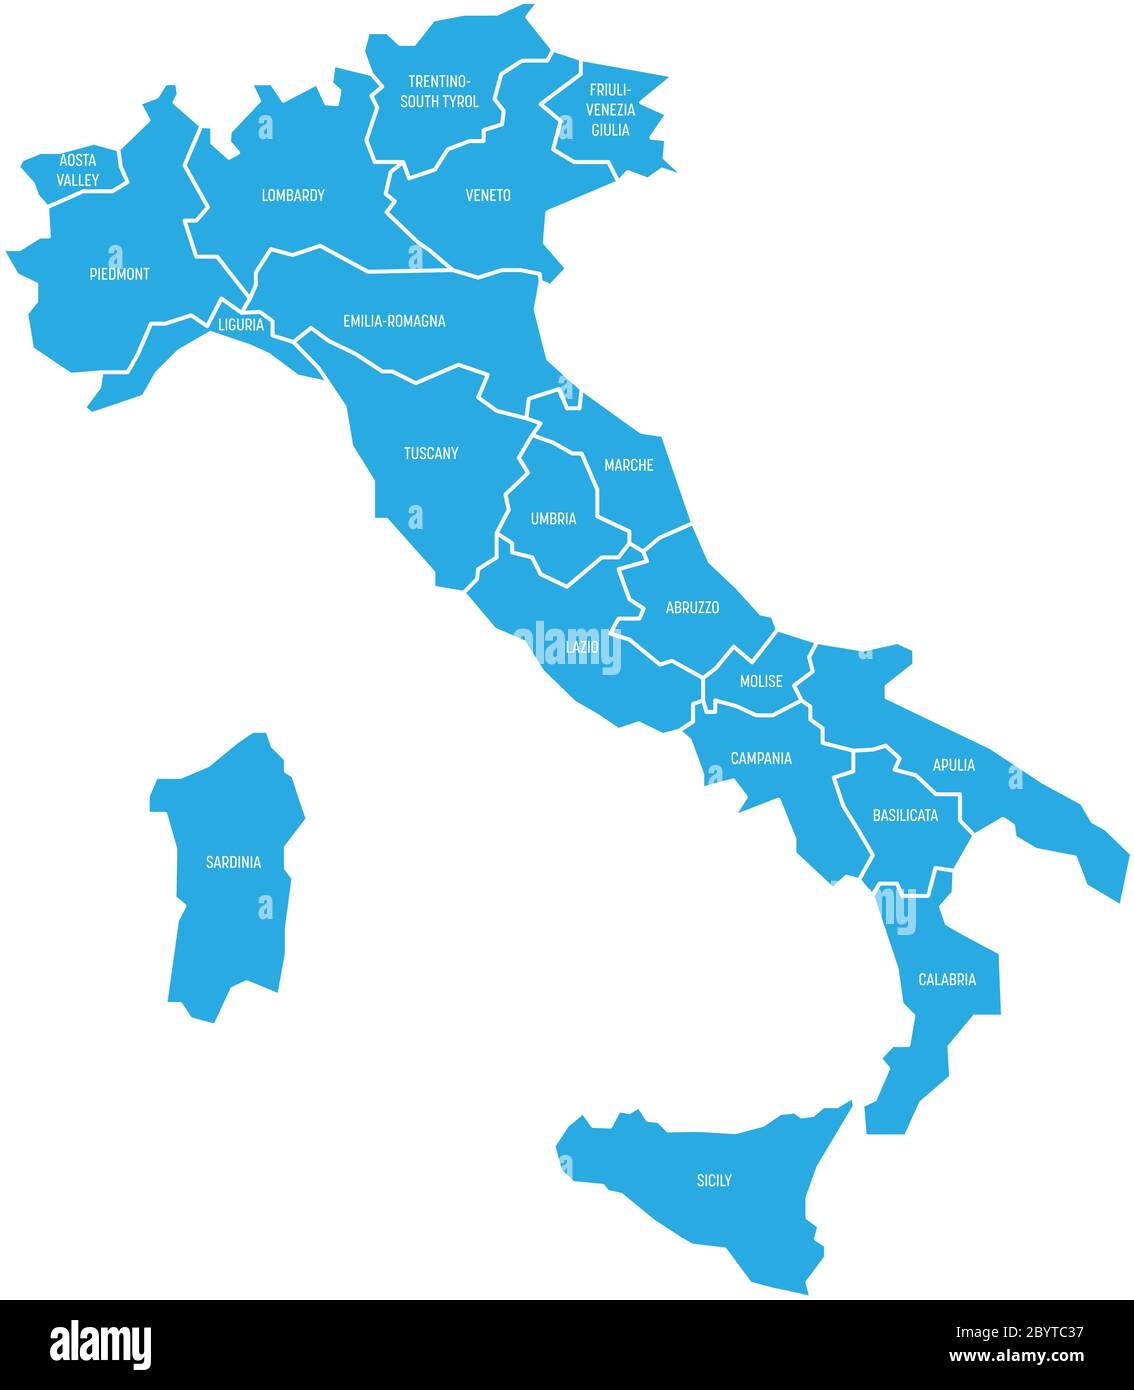 Carte de l'Italie divisée en 20 régions administratives. Bleu terre, bordures blanches et étiquettes blanches. Illustration simple à vecteur plat. Illustration de Vecteur